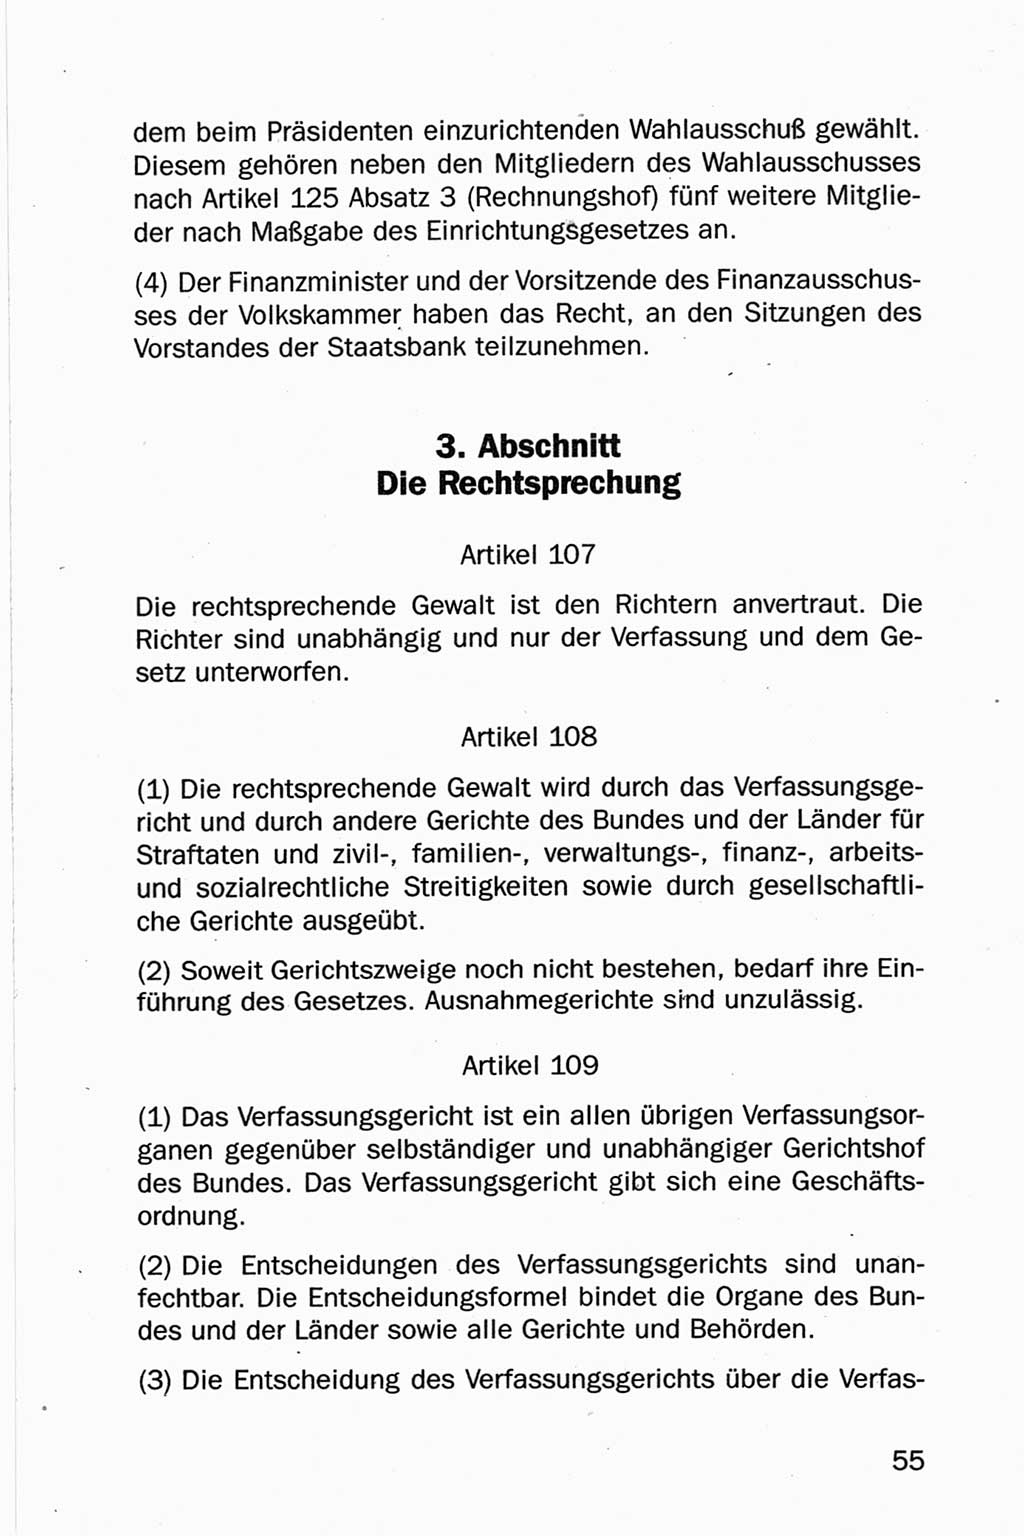 Entwurf Verfassung der Deutschen Demokratischen Republik (DDR), Arbeitsgruppe "Neue Verfassung der DDR" des Runden Tisches, Berlin 1990, Seite 55 (Entw. Verf. DDR 1990, S. 55)